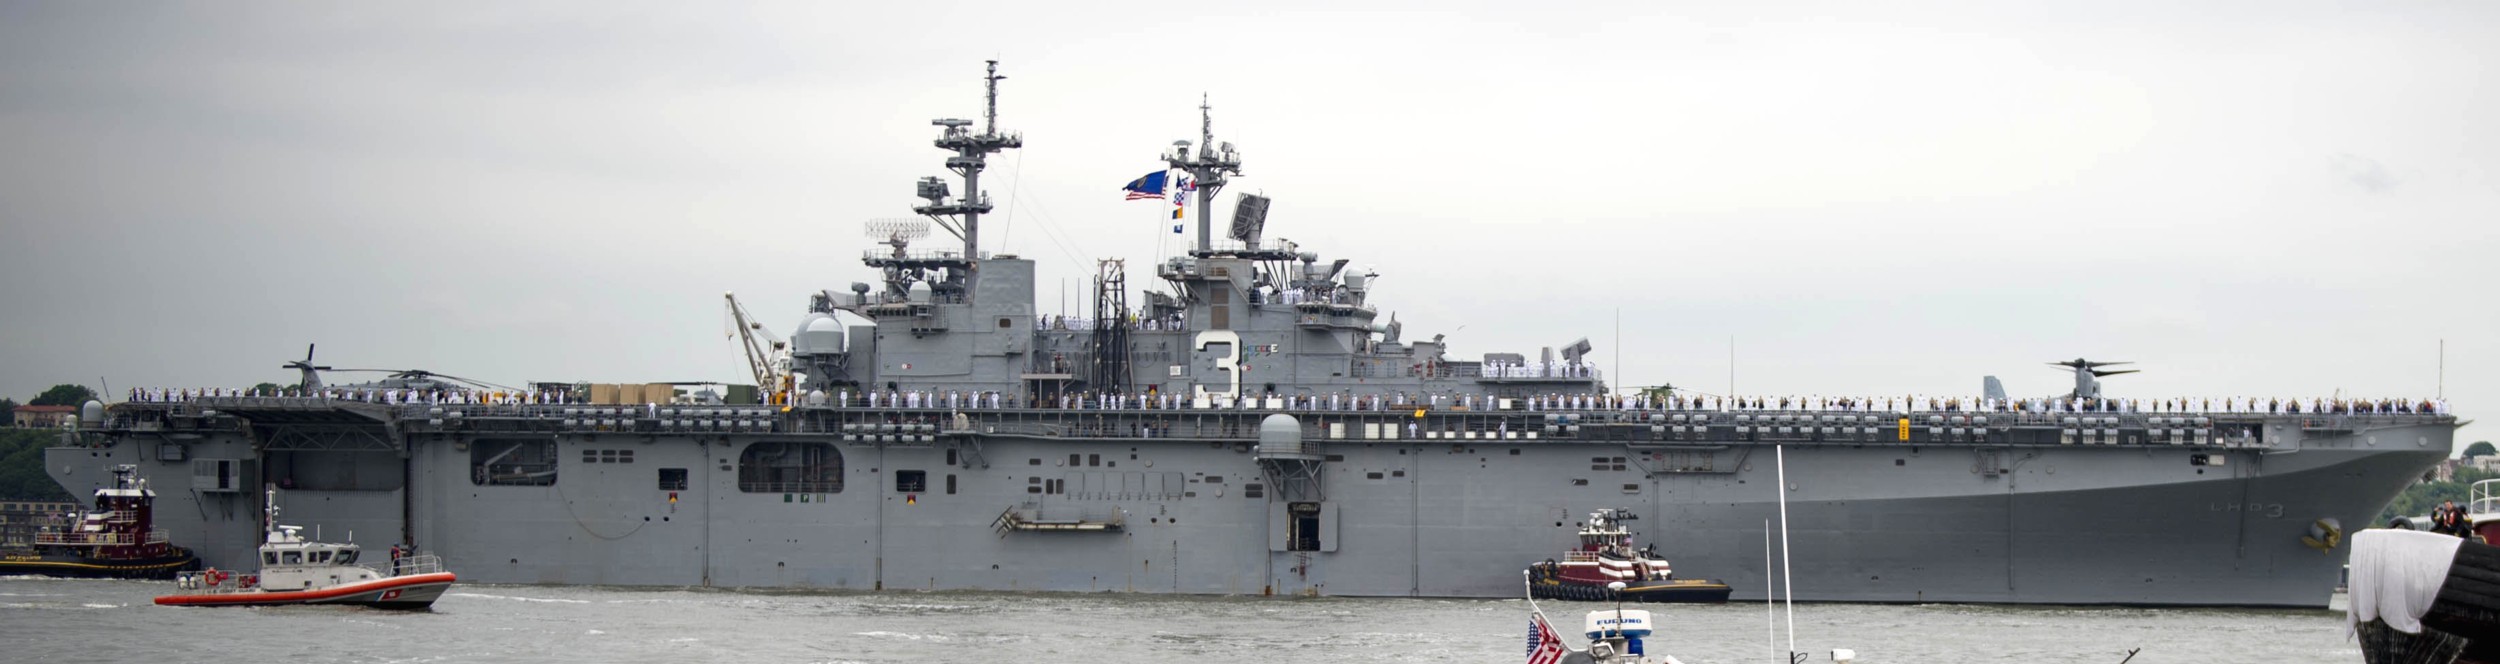 lhd-3 uss kearsarge wasp class amphibious assault ship landing dock us navy new york 2017 168